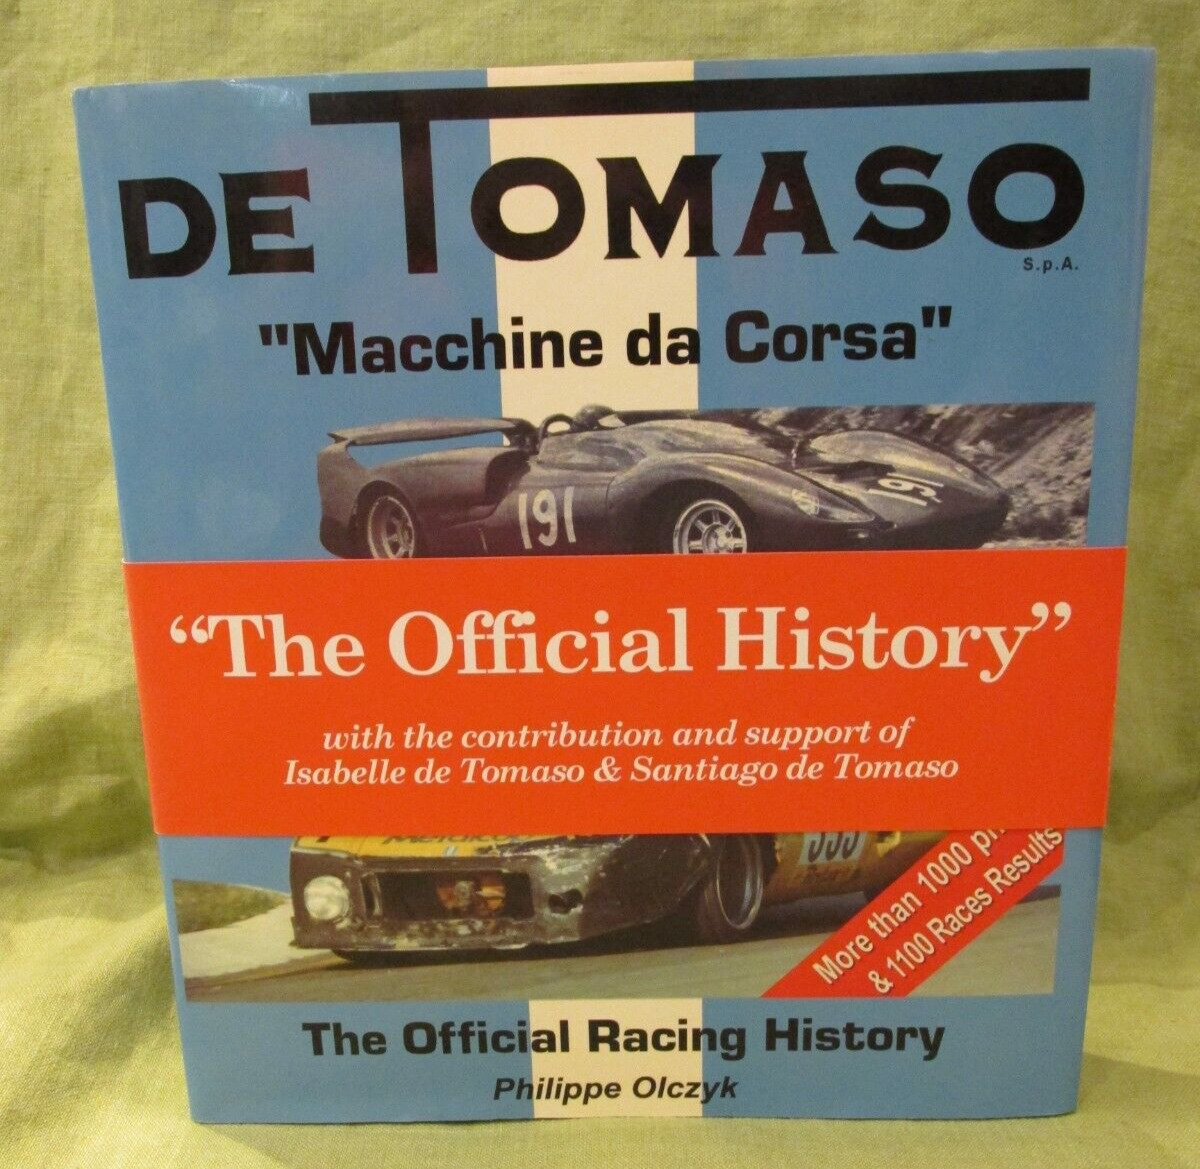 NEW 2006 DE TOMASO Official Racing History Olczyk 1000+ Photos Car 462 Pgs RARE